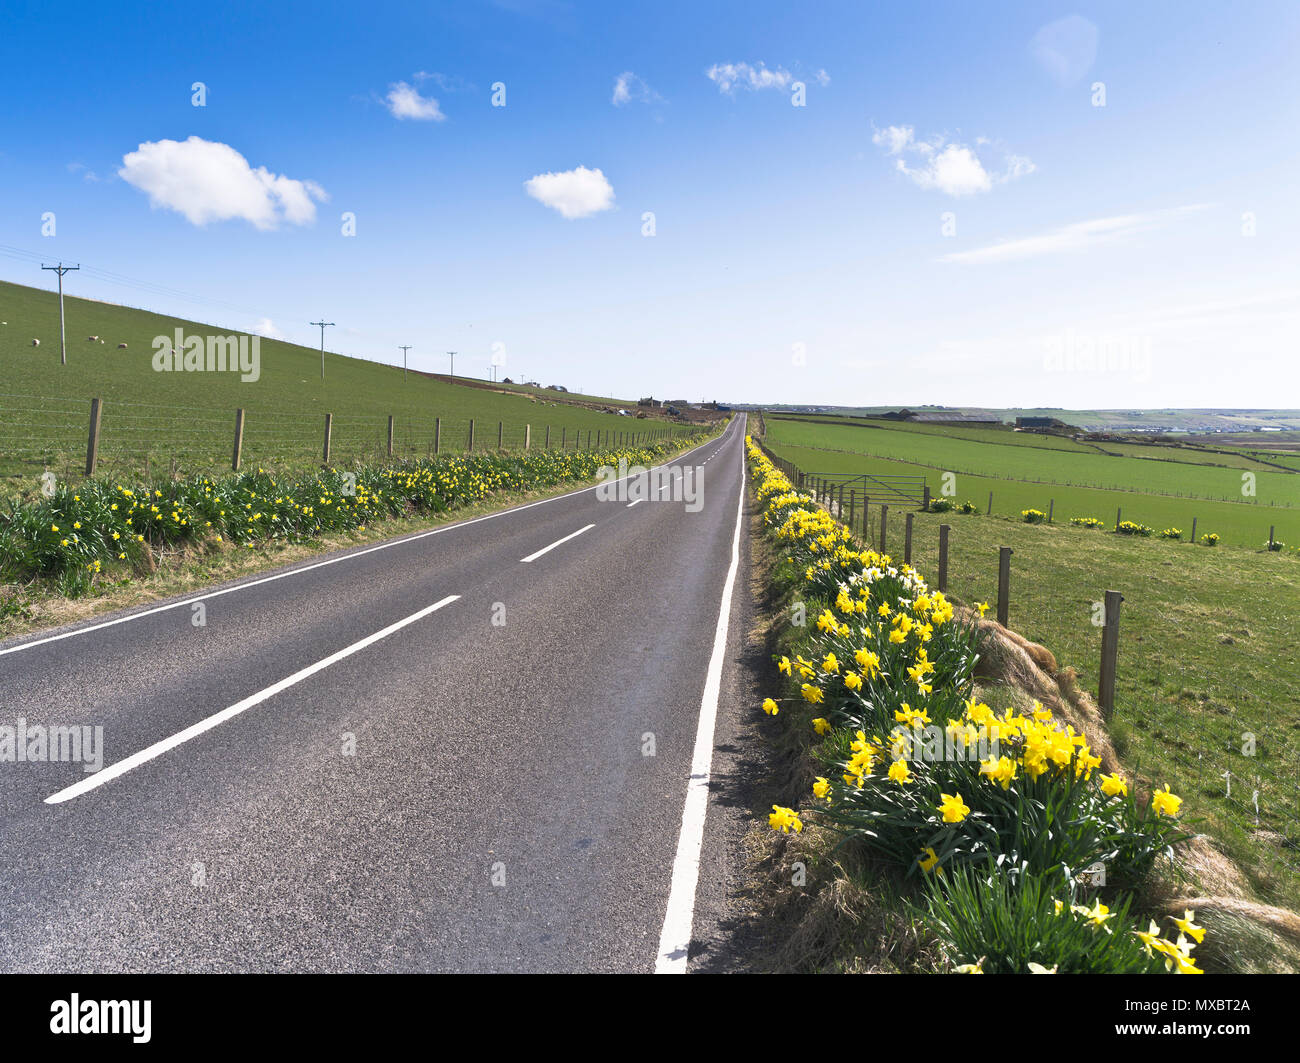 dh strada vuota ORKNEY isole scozzesi deserta strada di campagna narcodils strada verge fiori scozia daffodil primavera soleggiato regno unito Foto Stock